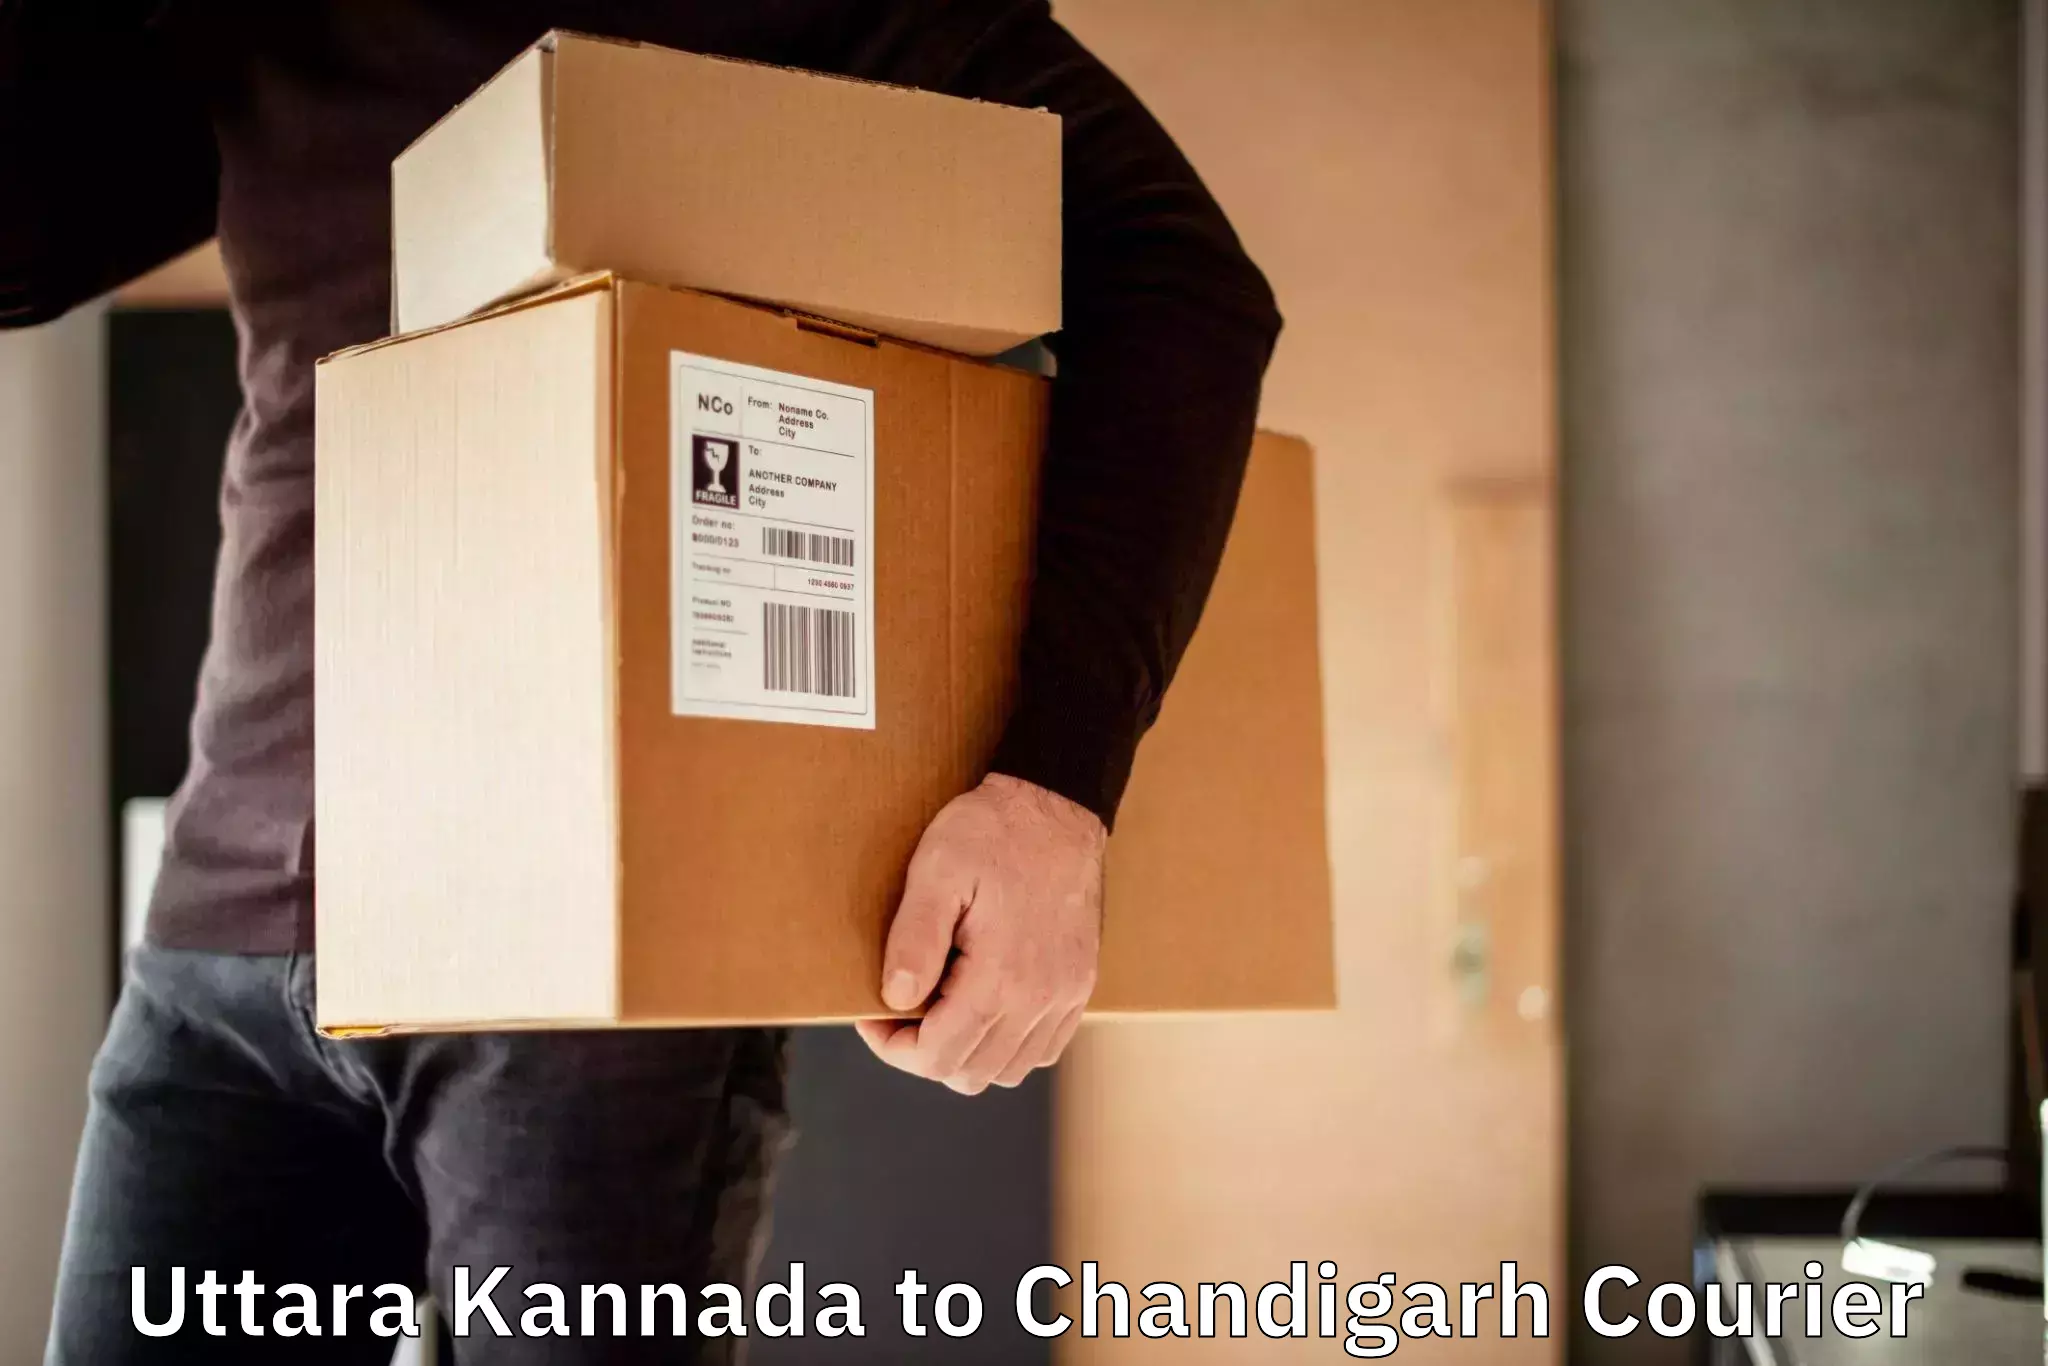 Efficient package consolidation Uttara Kannada to Chandigarh